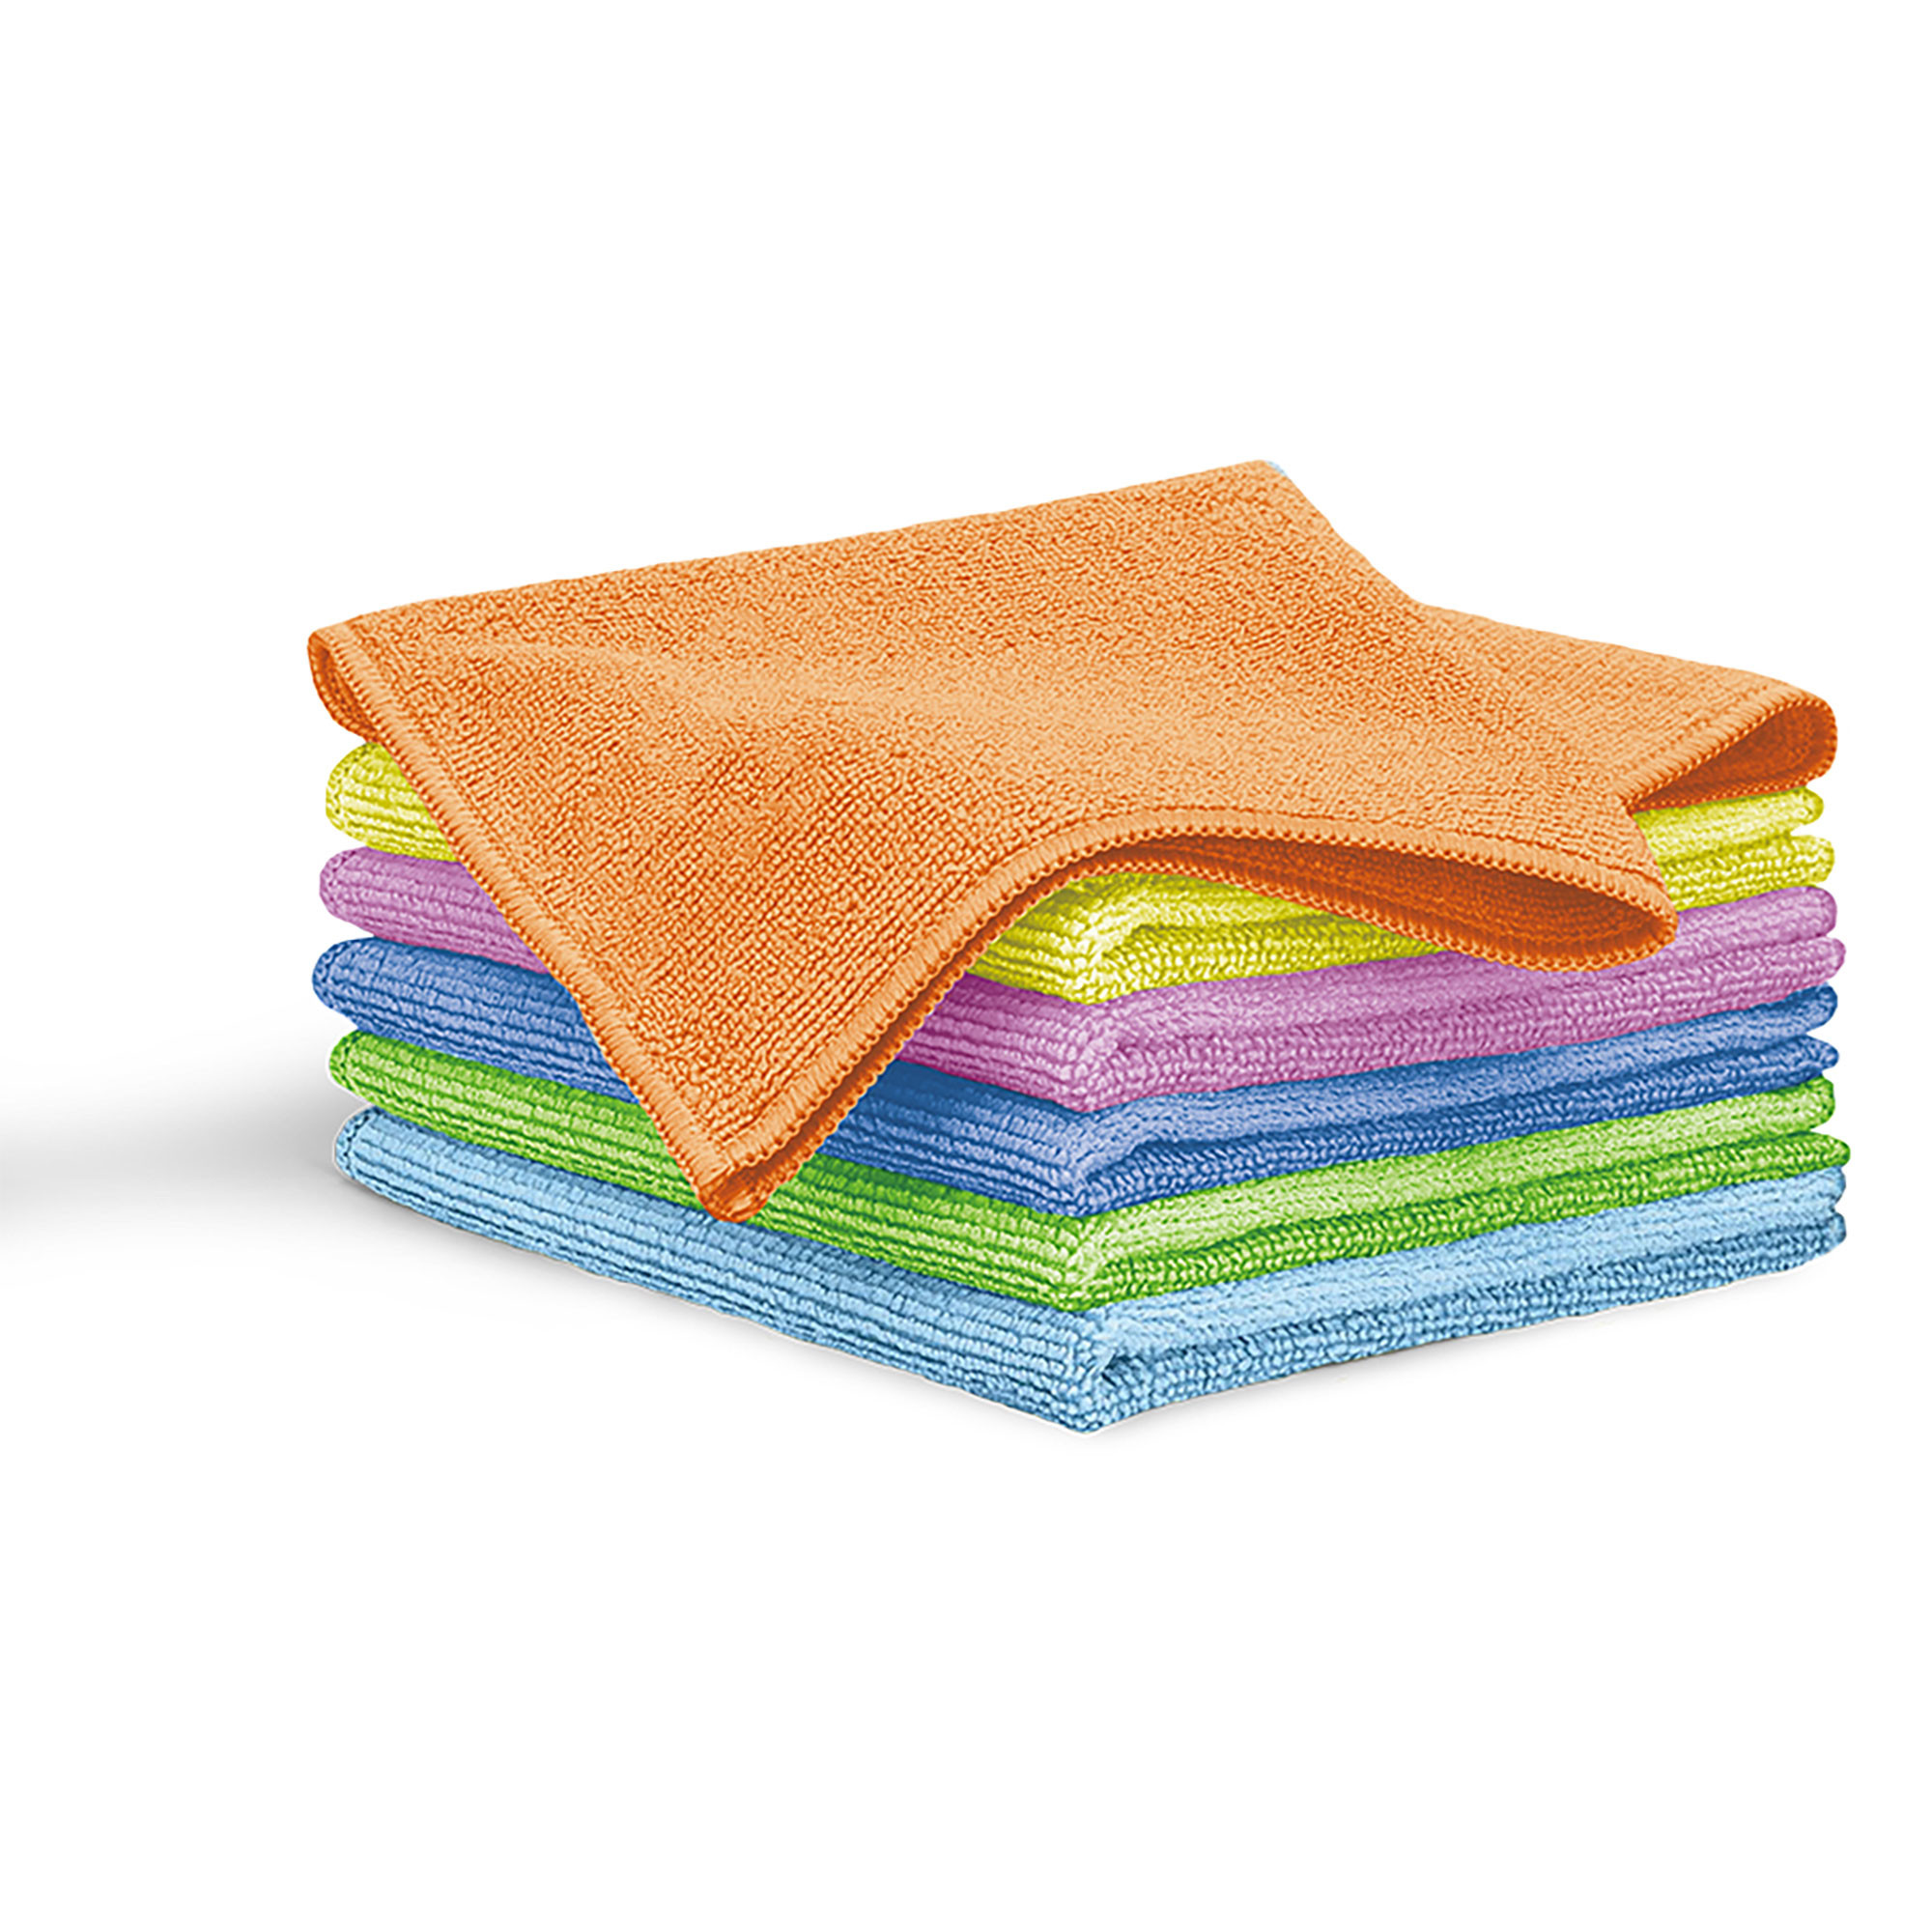 Baratos, absorbentes y en seis colores: el set de paños de cocina